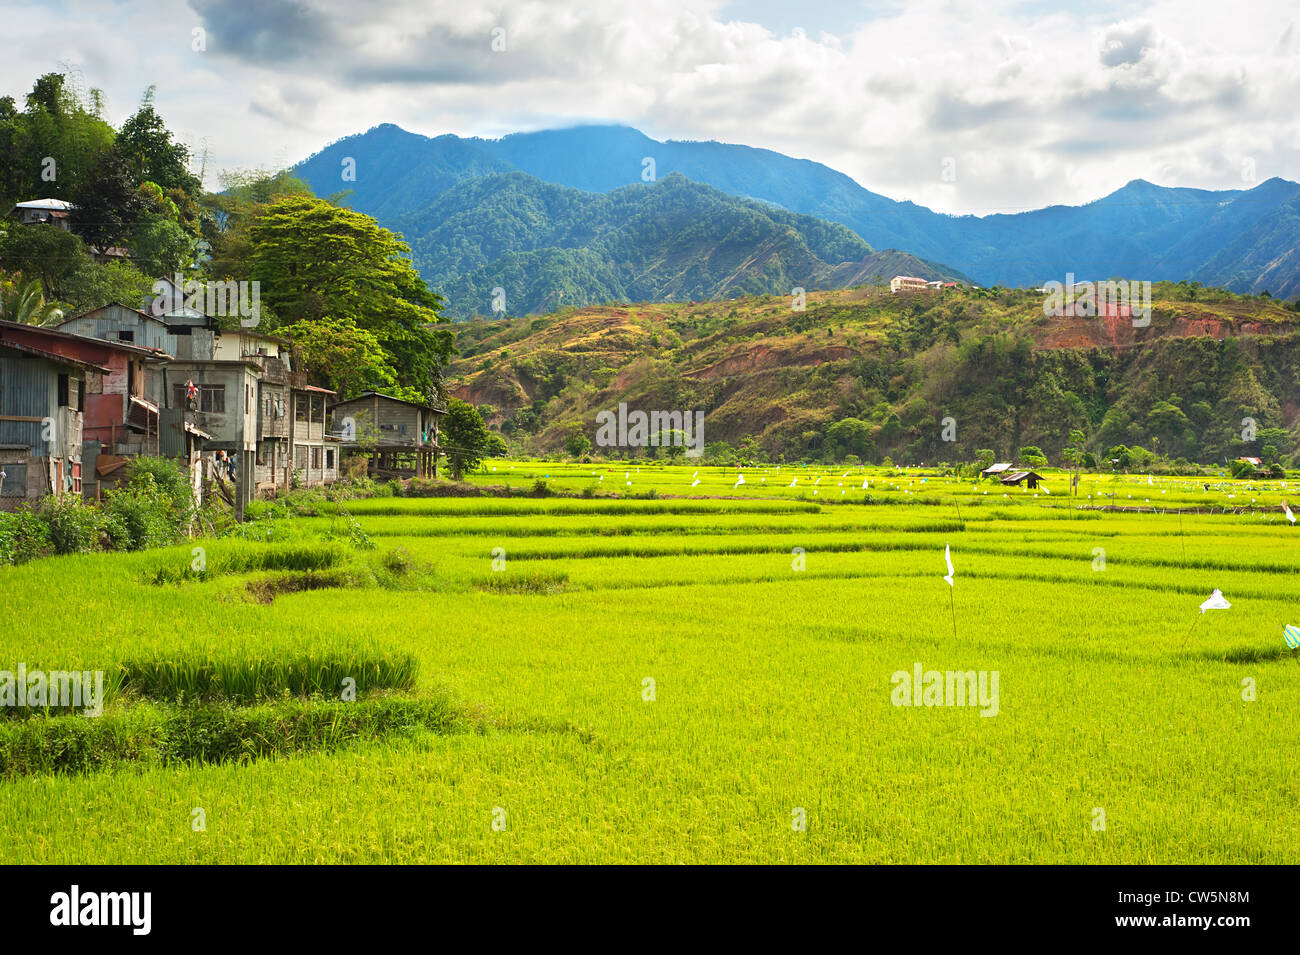 Les champs de riz dans les montagnes de la Cordillère, Philippines Banque D'Images